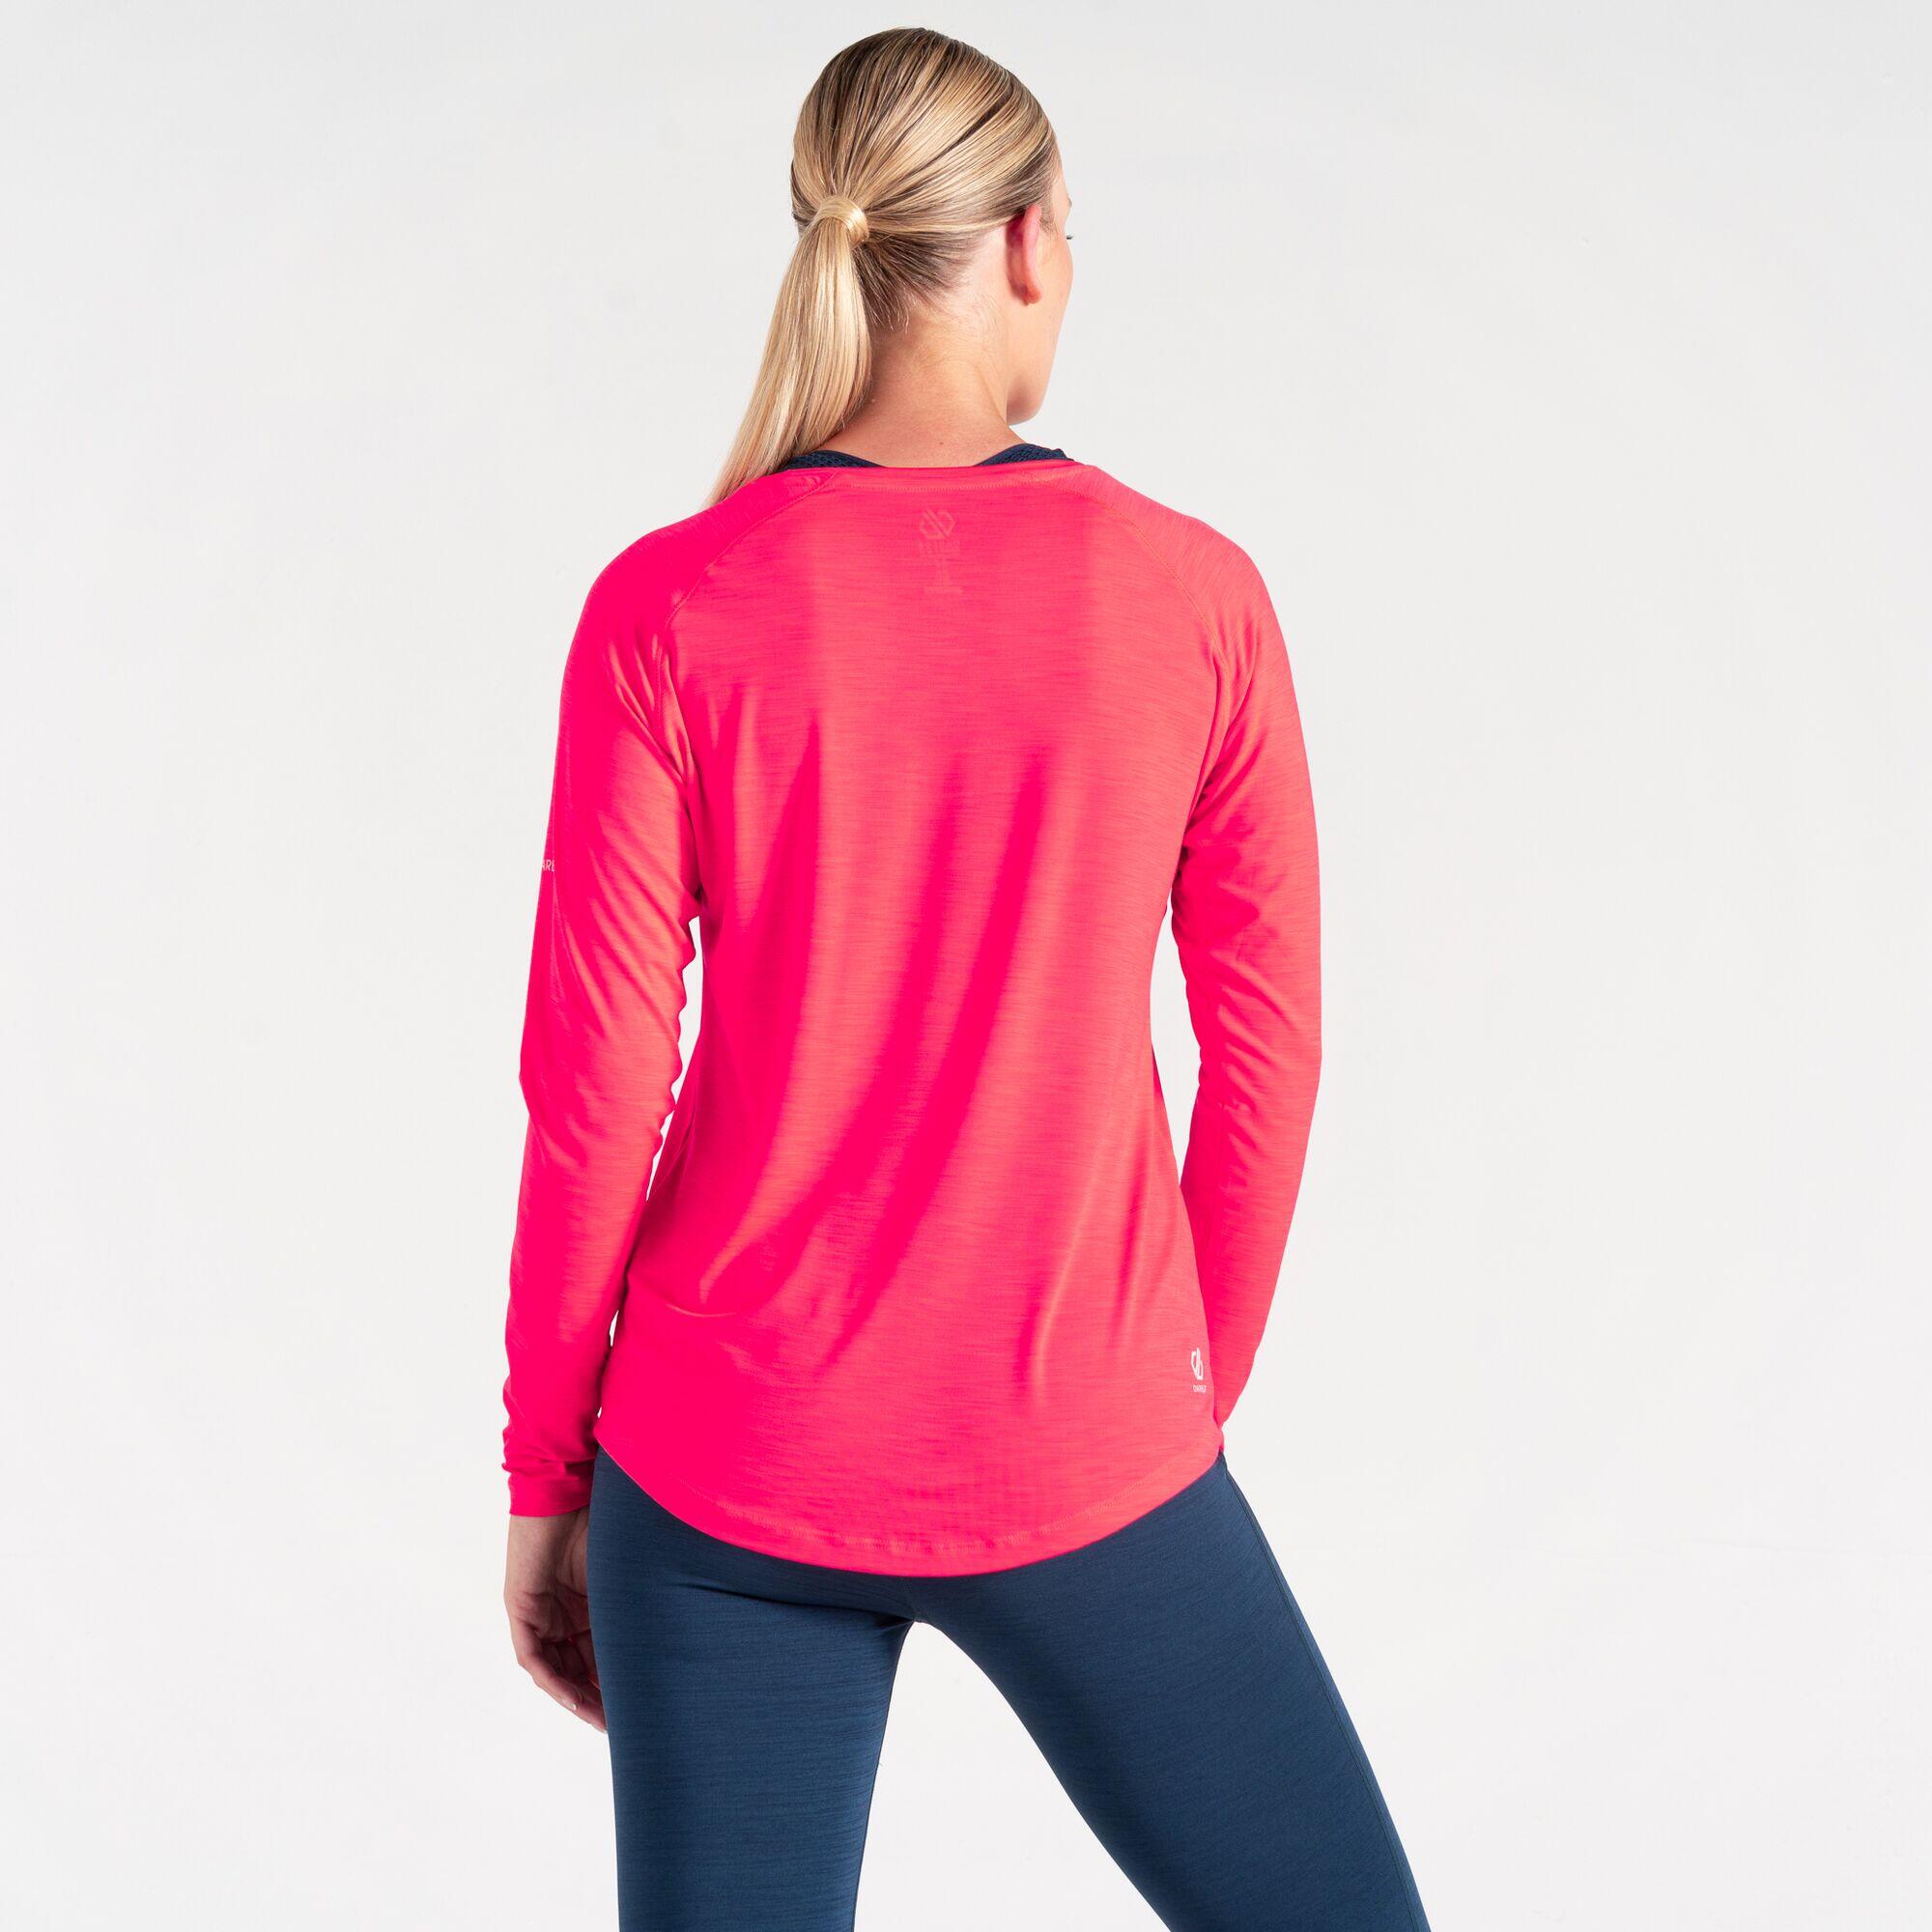 Discern Women's Running Long Sleeve T-Shirt 3/5